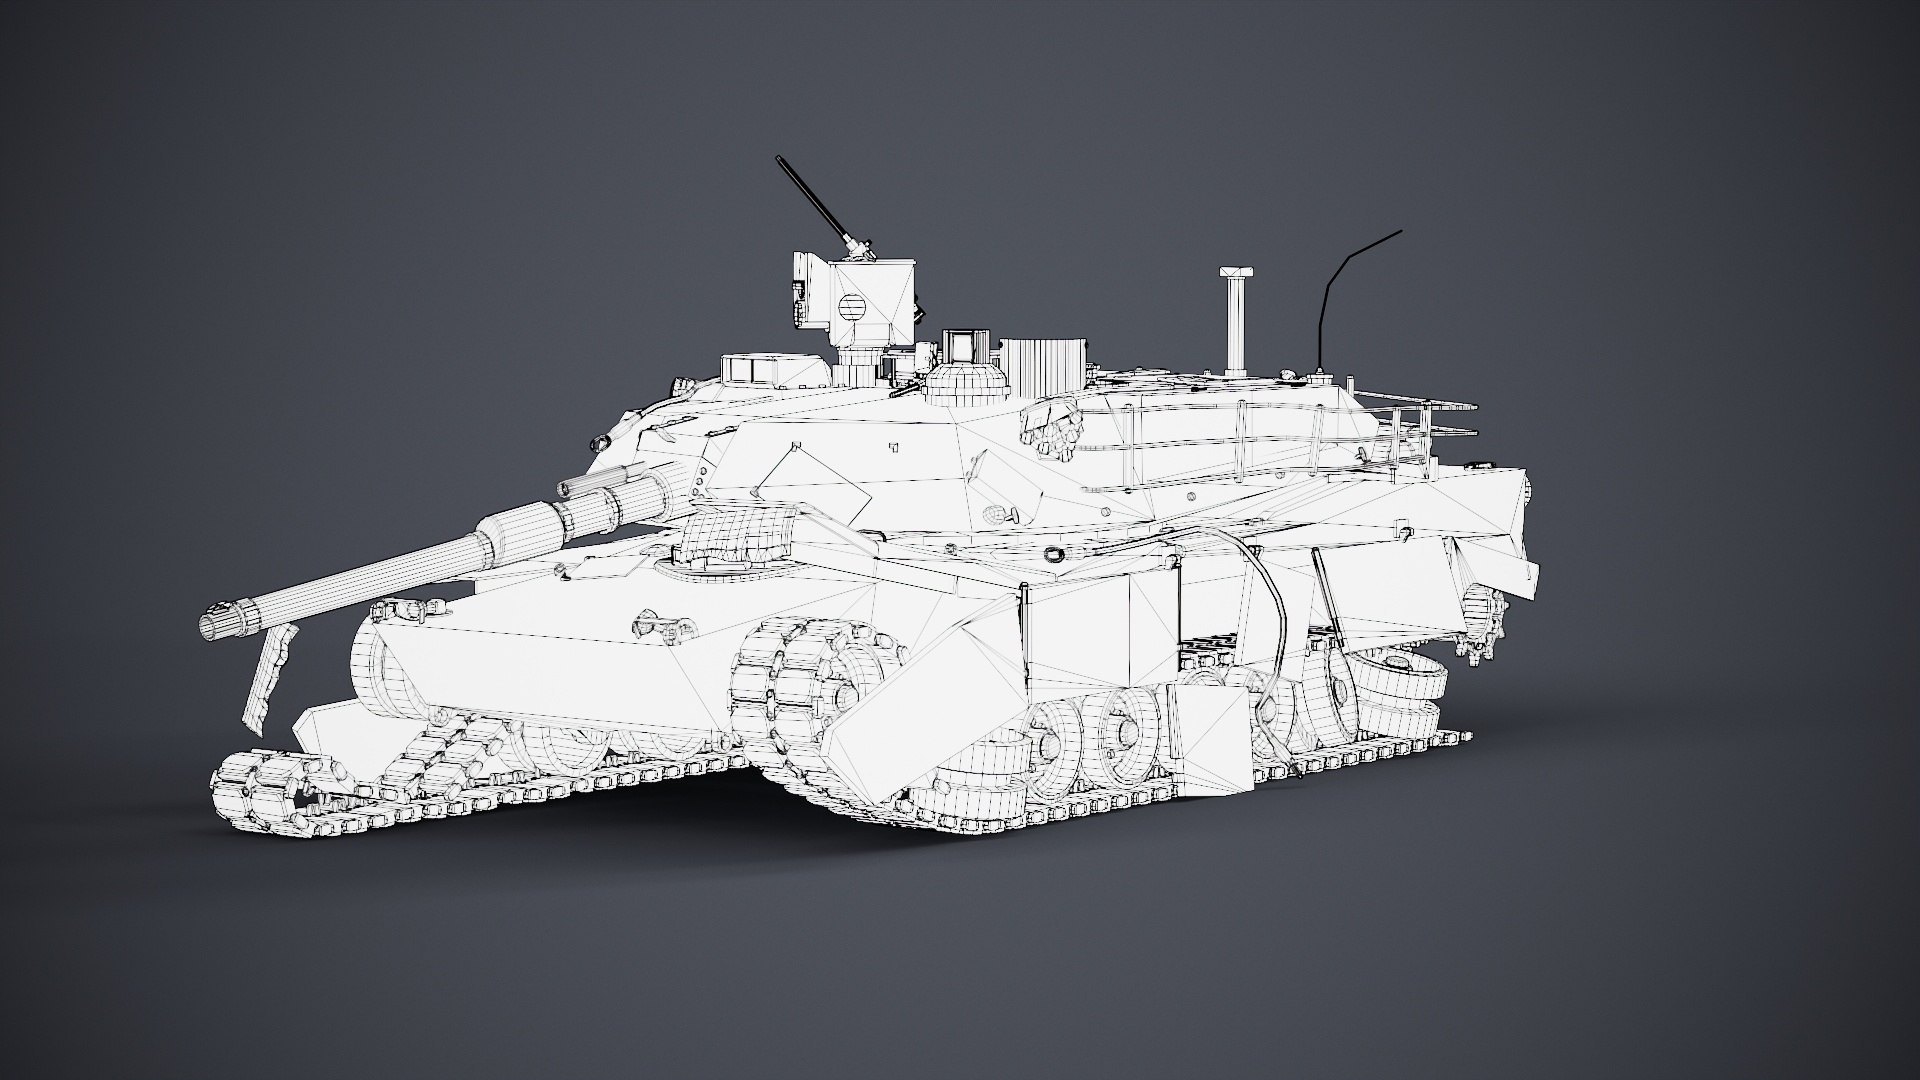 3D model M1 Abrams Destroyed https://p.turbosquid.com/ts-thumb/En/Fd3Gz5/gM/z01/jpg/1701809412/1920x1080/turn_fit_q99/2682d3e47e20de877d3774d2595b6774e70fdc4e/z01-1.jpg